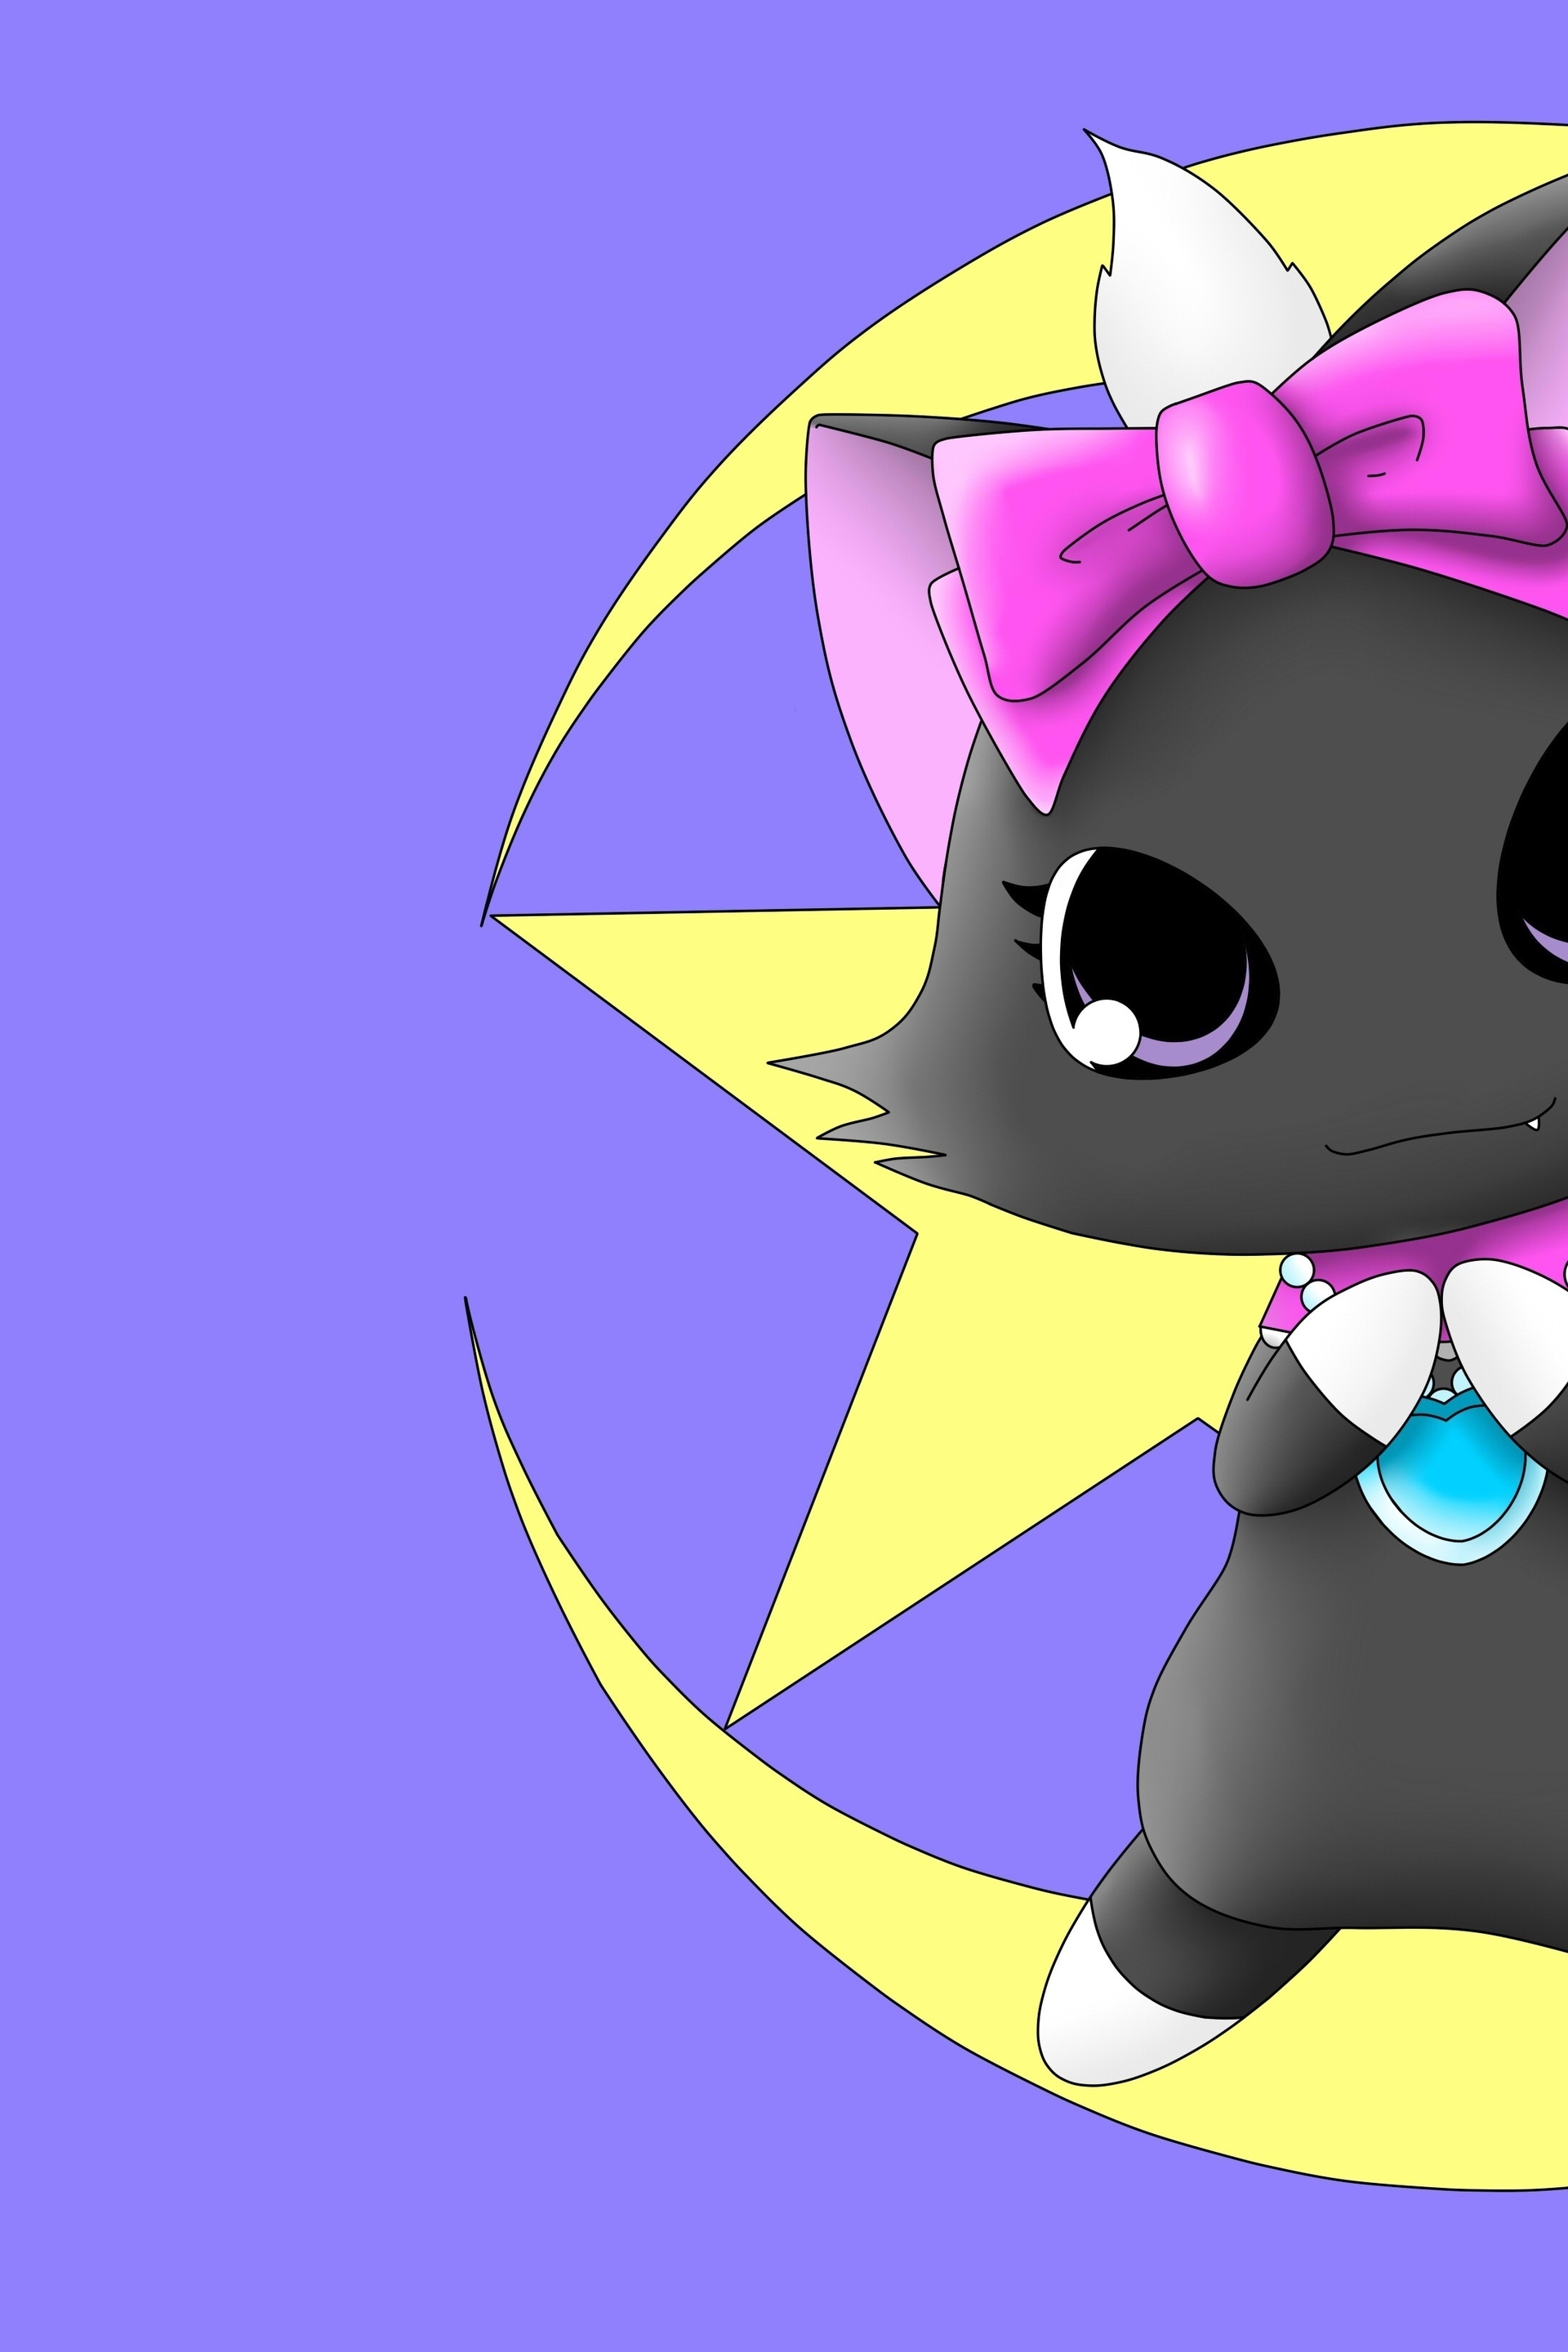 Image: Kitten, eyes, bow, moon